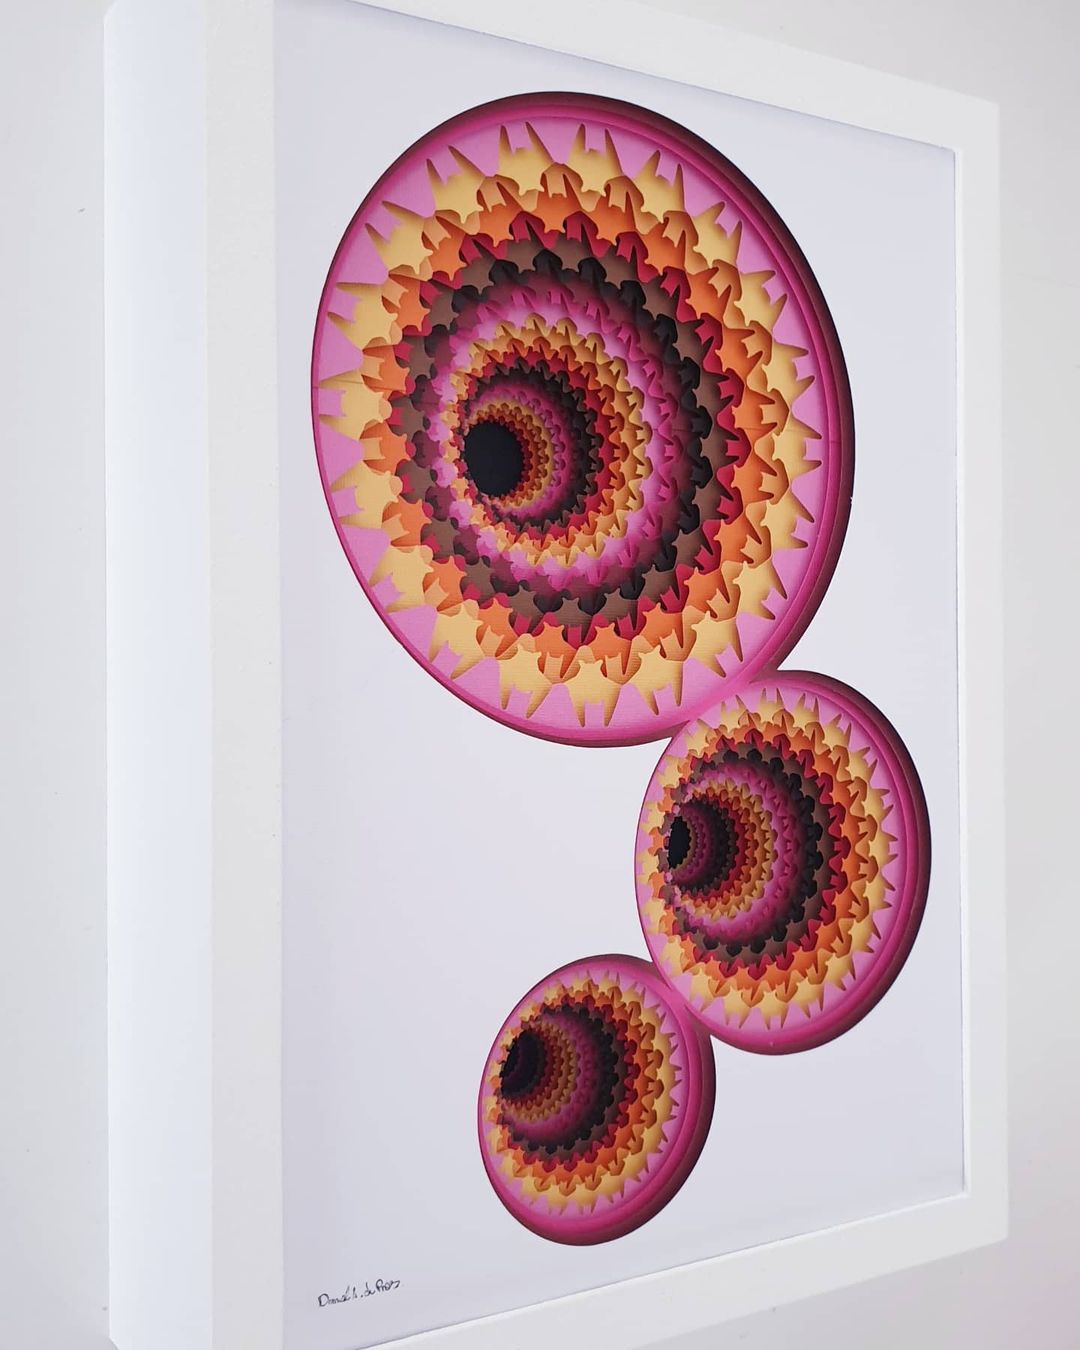 Mesmerizing Paper Sculptures Of Colorful Portals By Daniel A Du Preez 10